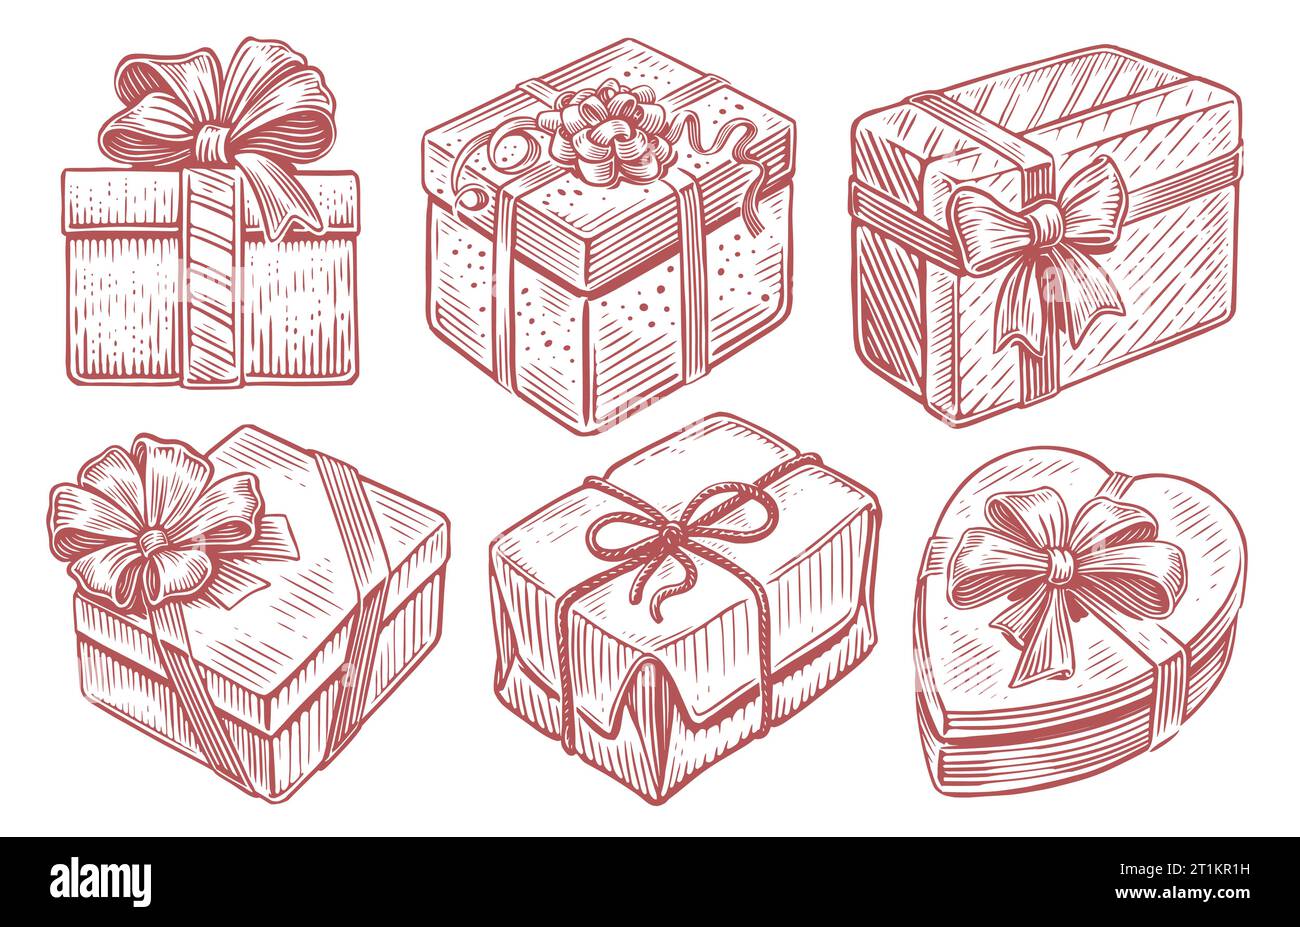 Set mit Weihnachtsgeschenken, Weihnachtsgeschenkboxen mit Bändern, Neujahrsgeschenke. Vektorillustration für Vintage-Skizzen Stock Vektor